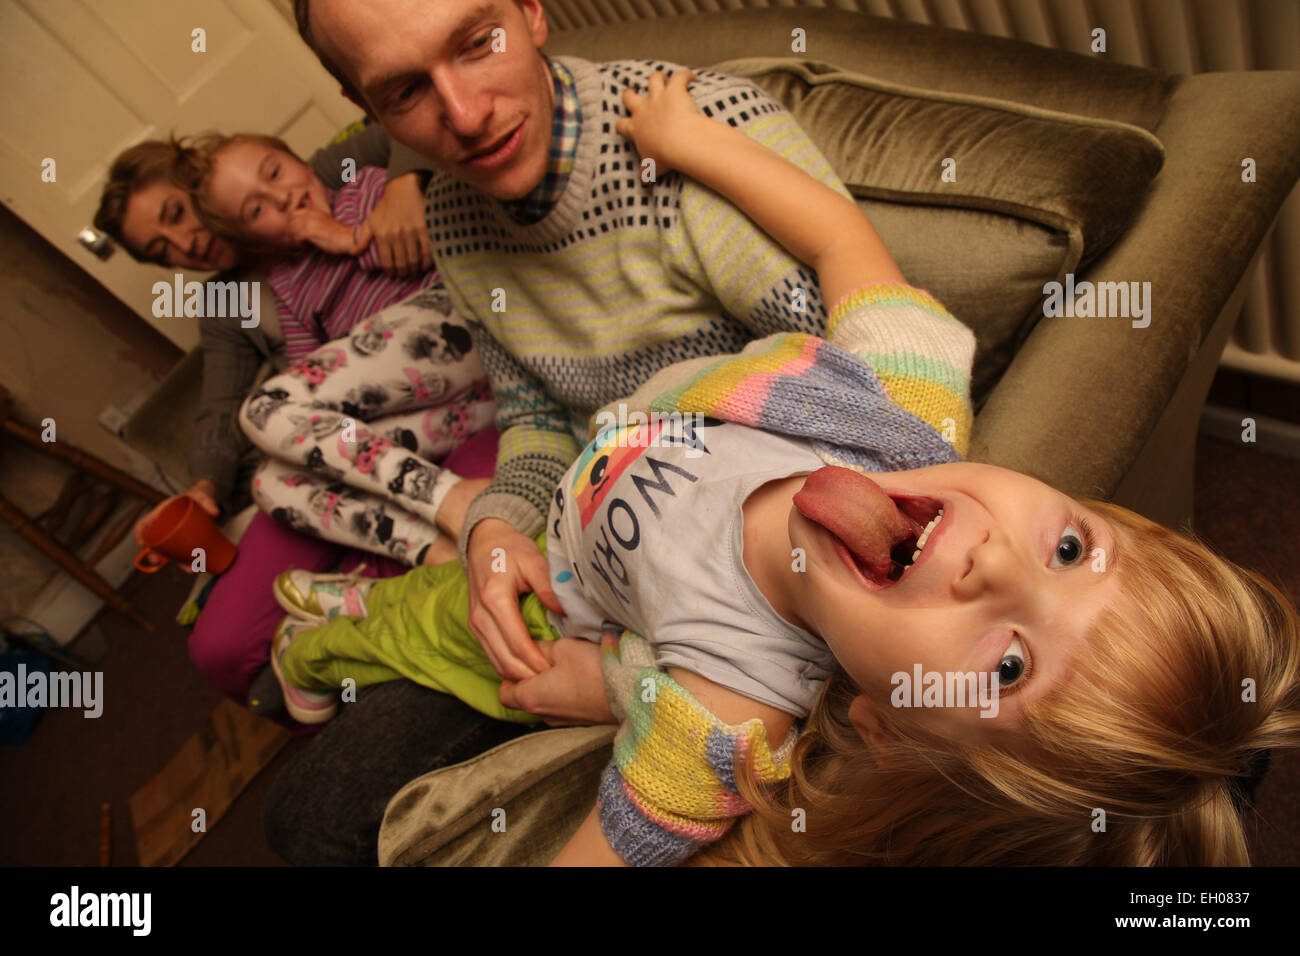 Familie auf Sofa - Modell veröffentlicht Stockfoto